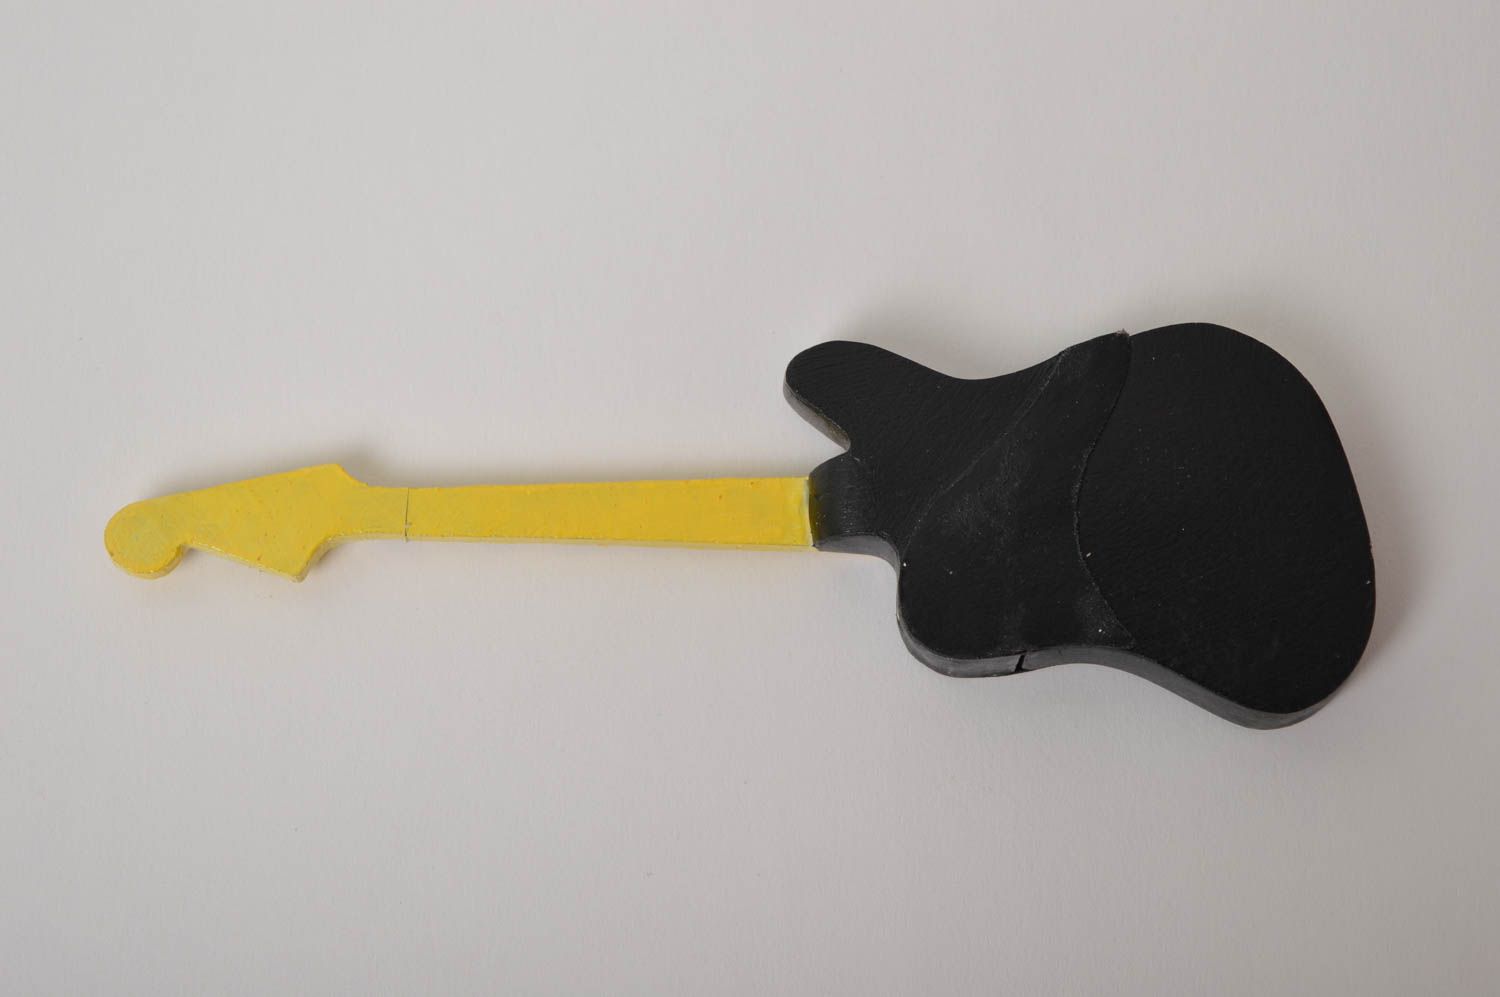 Флешка-гитара ручной работы оригинальная флешка из пластики красивая флешка фото 3